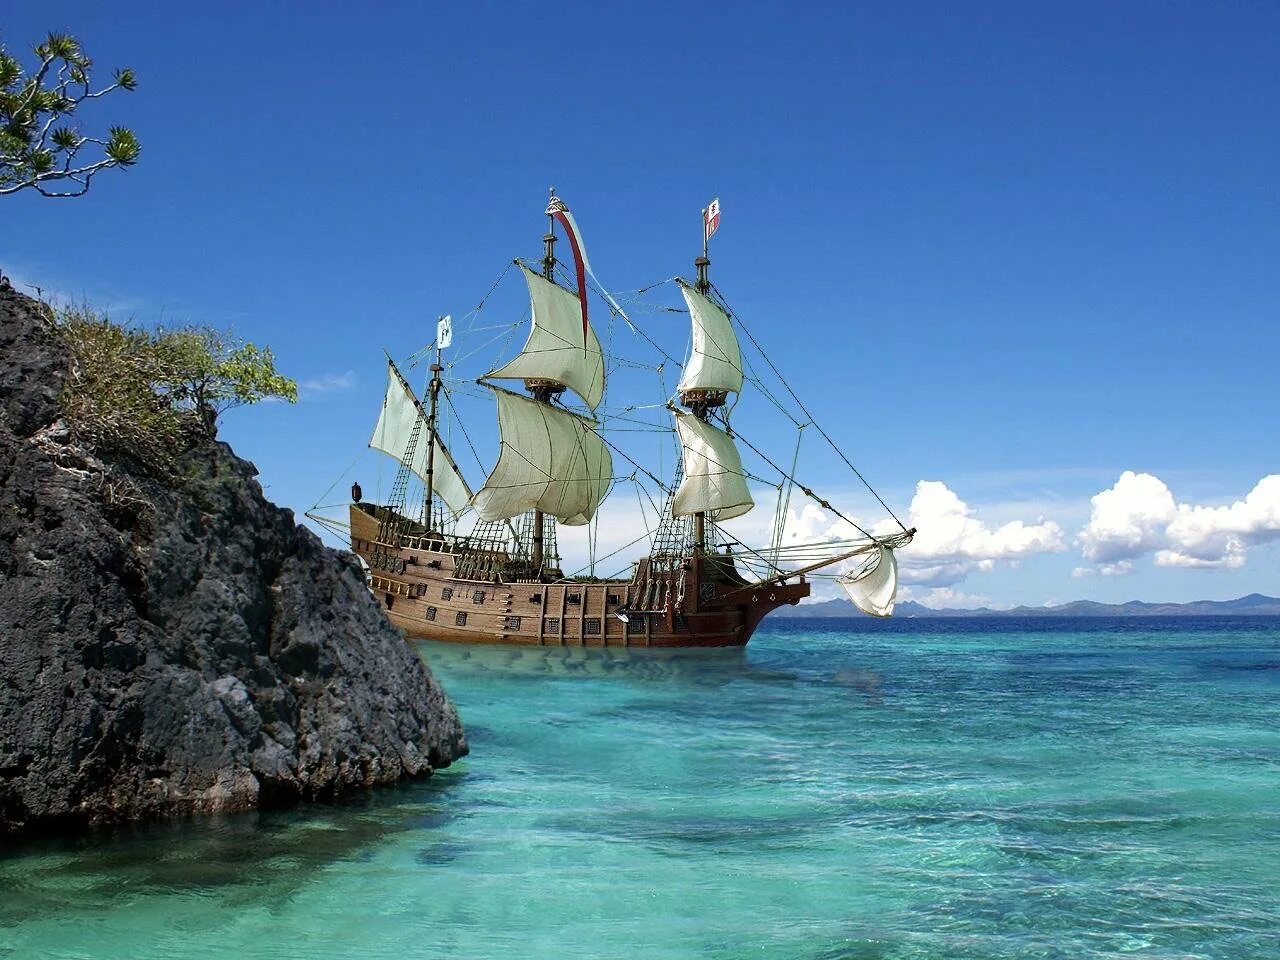 Галеон корабль испанский. Парусник Галеон Испании. Эспаньола корабль остров сокровищ. Галеон корабль 17 века.